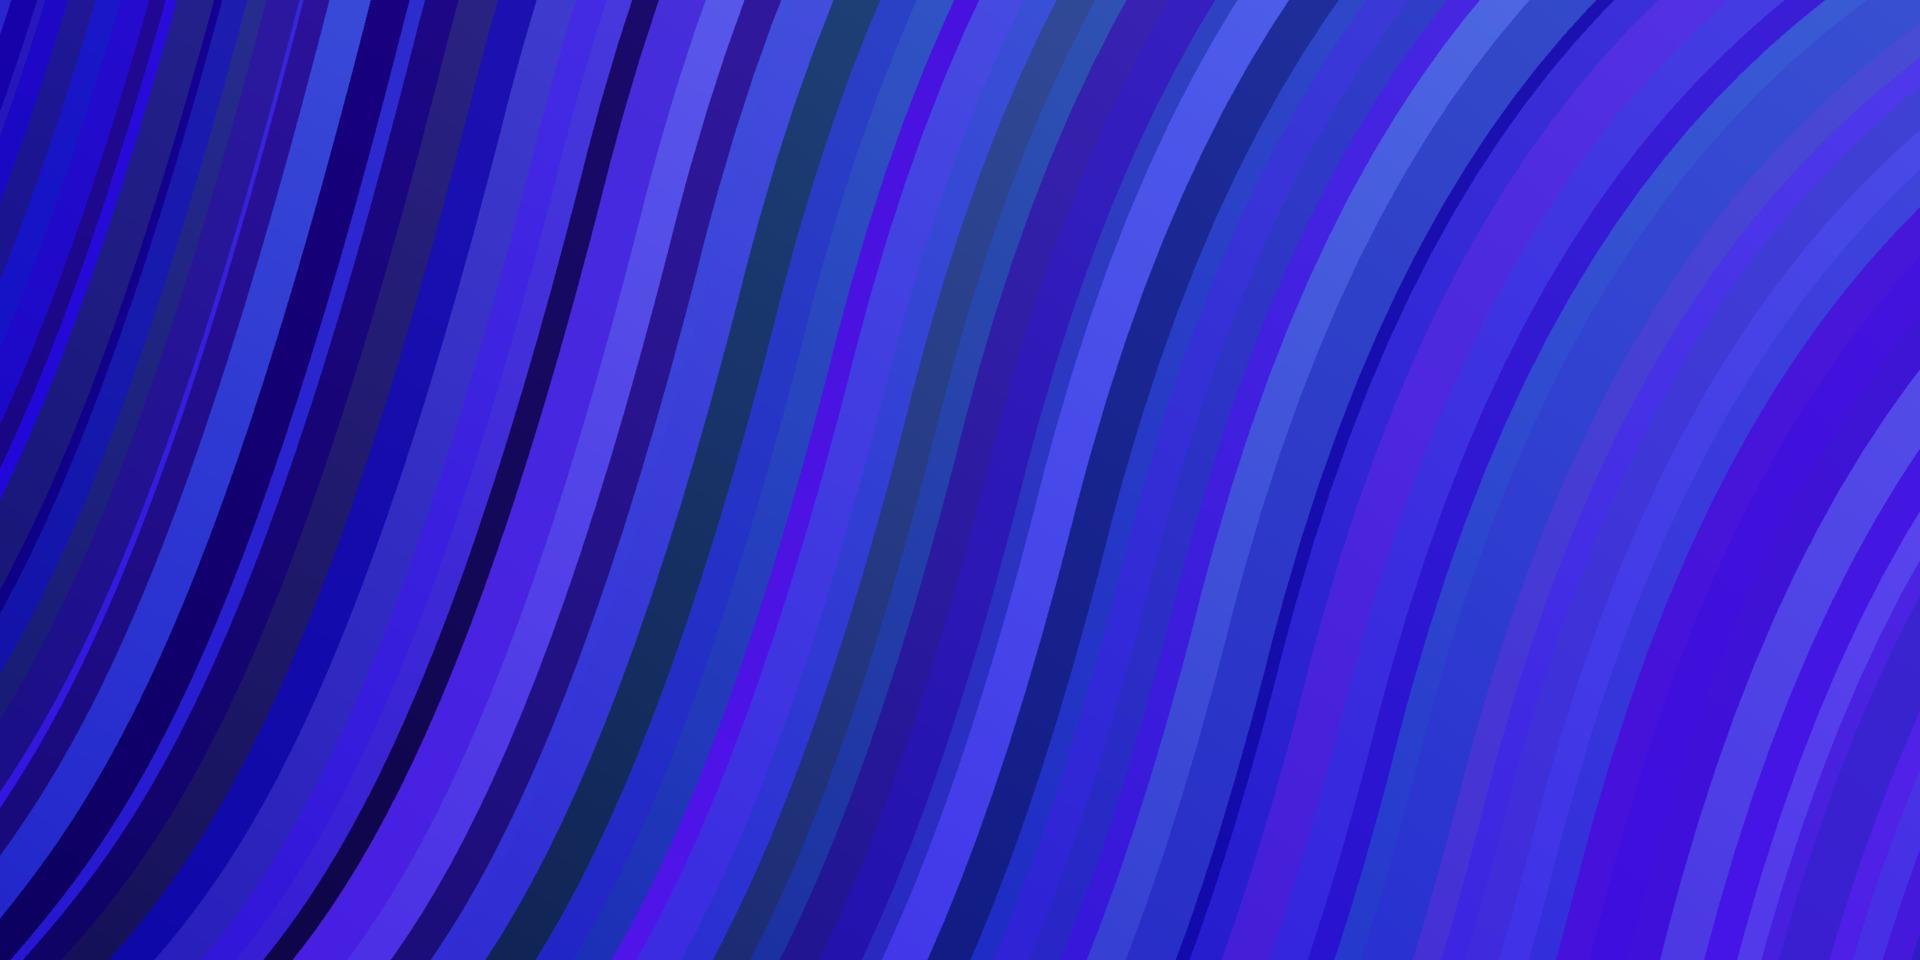 ljusrosa, blå vektorbakgrund med bågar. vektor